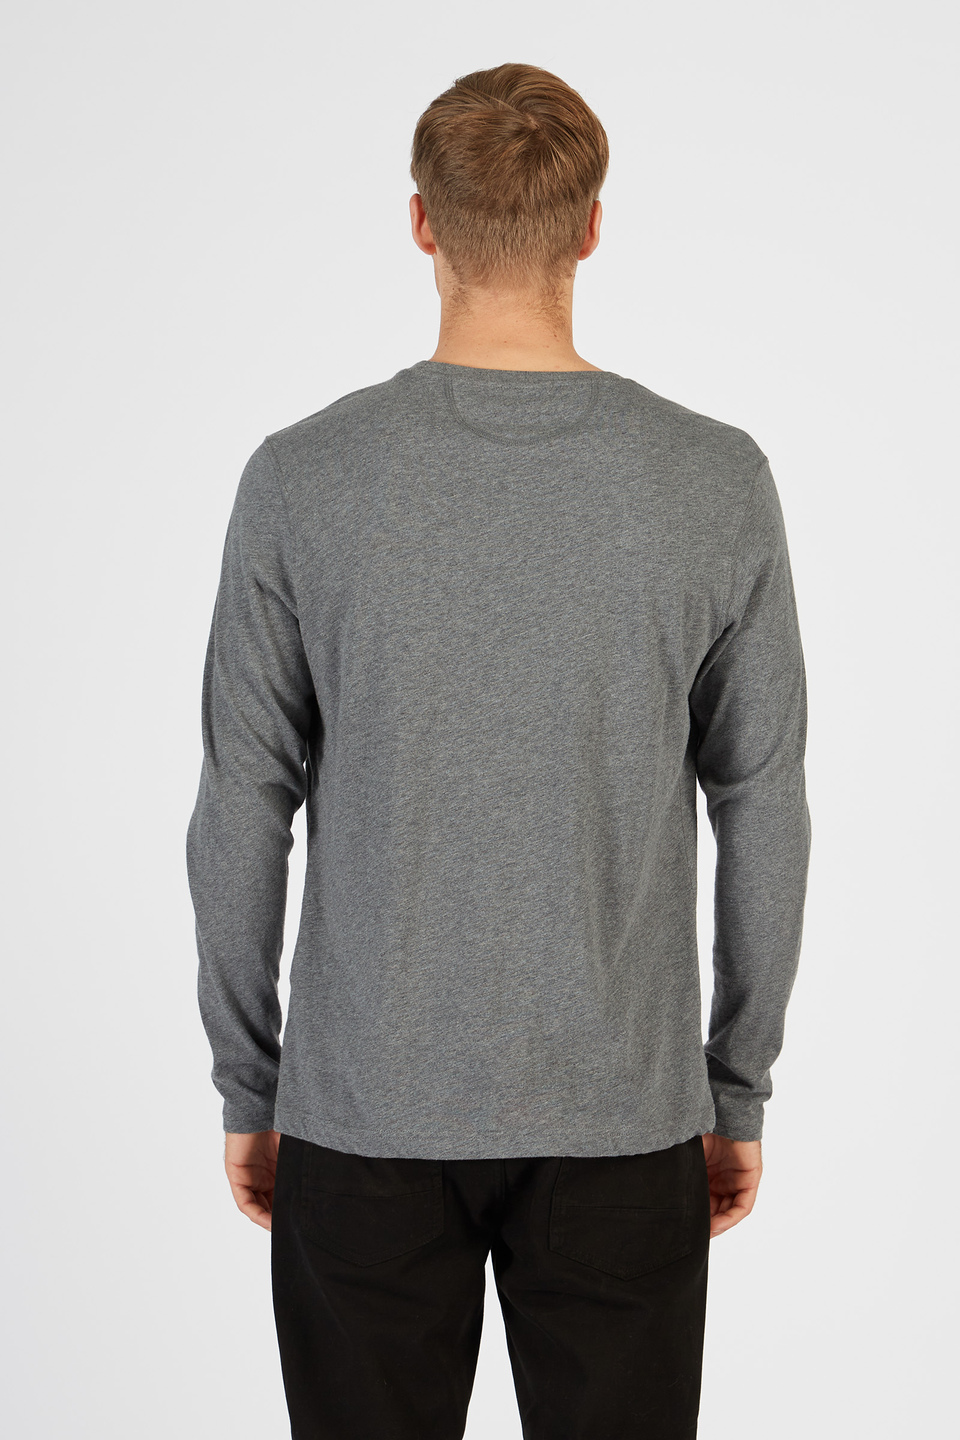 T-shirt da uomo a maniche lunghe modello girocollo regular fit | La Martina - Official Online Shop